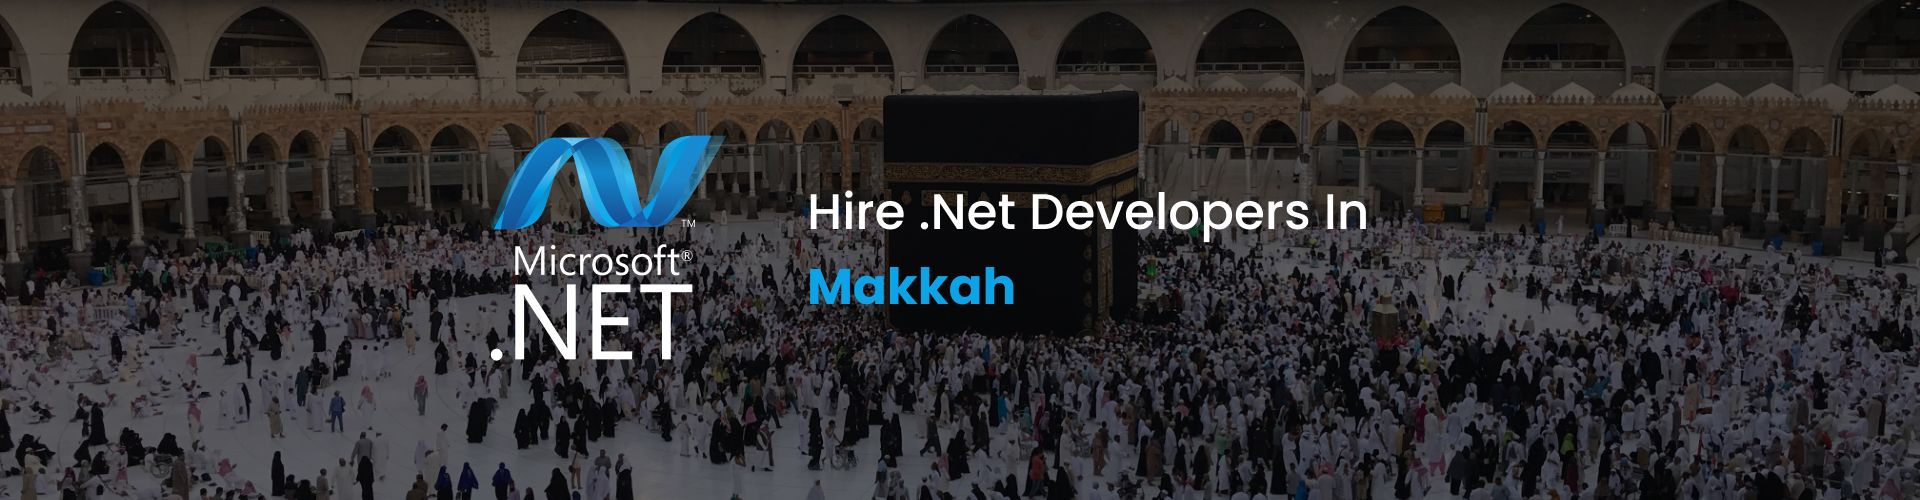 hire .net developers in makkah